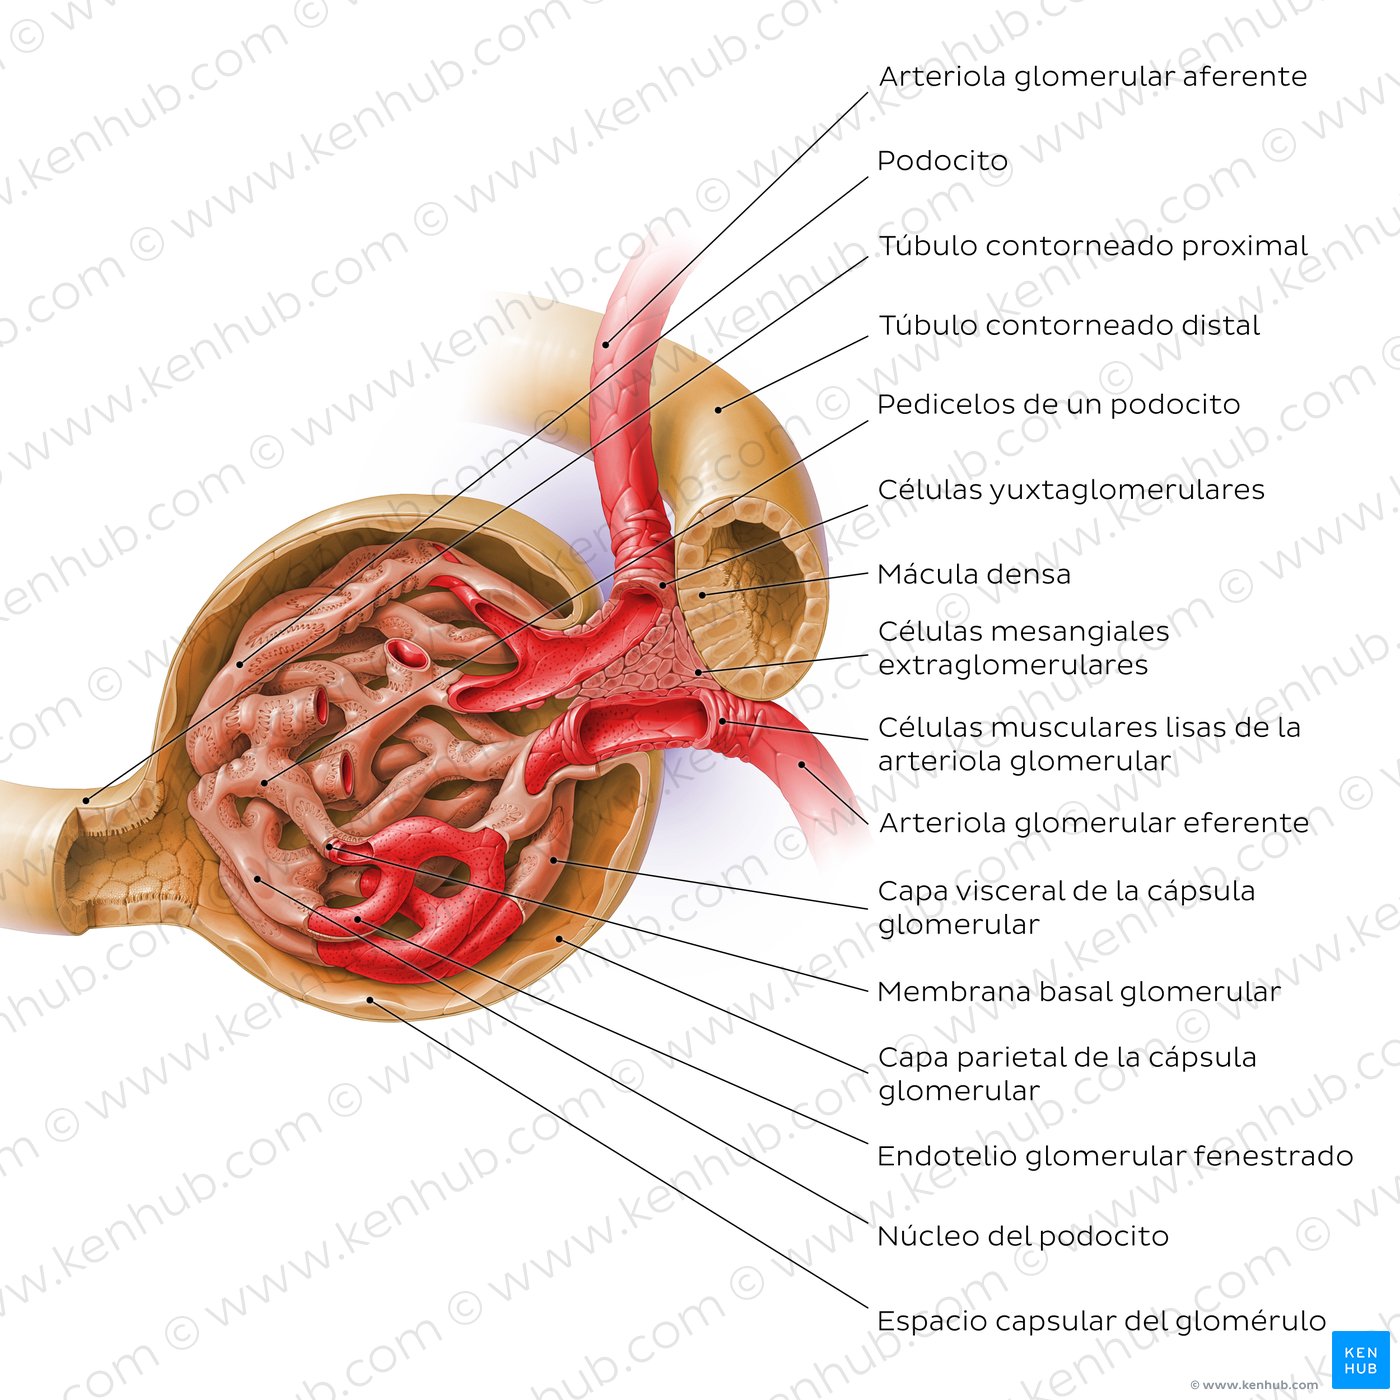 Corpúsculo renal y aparato yuxtaglomerular